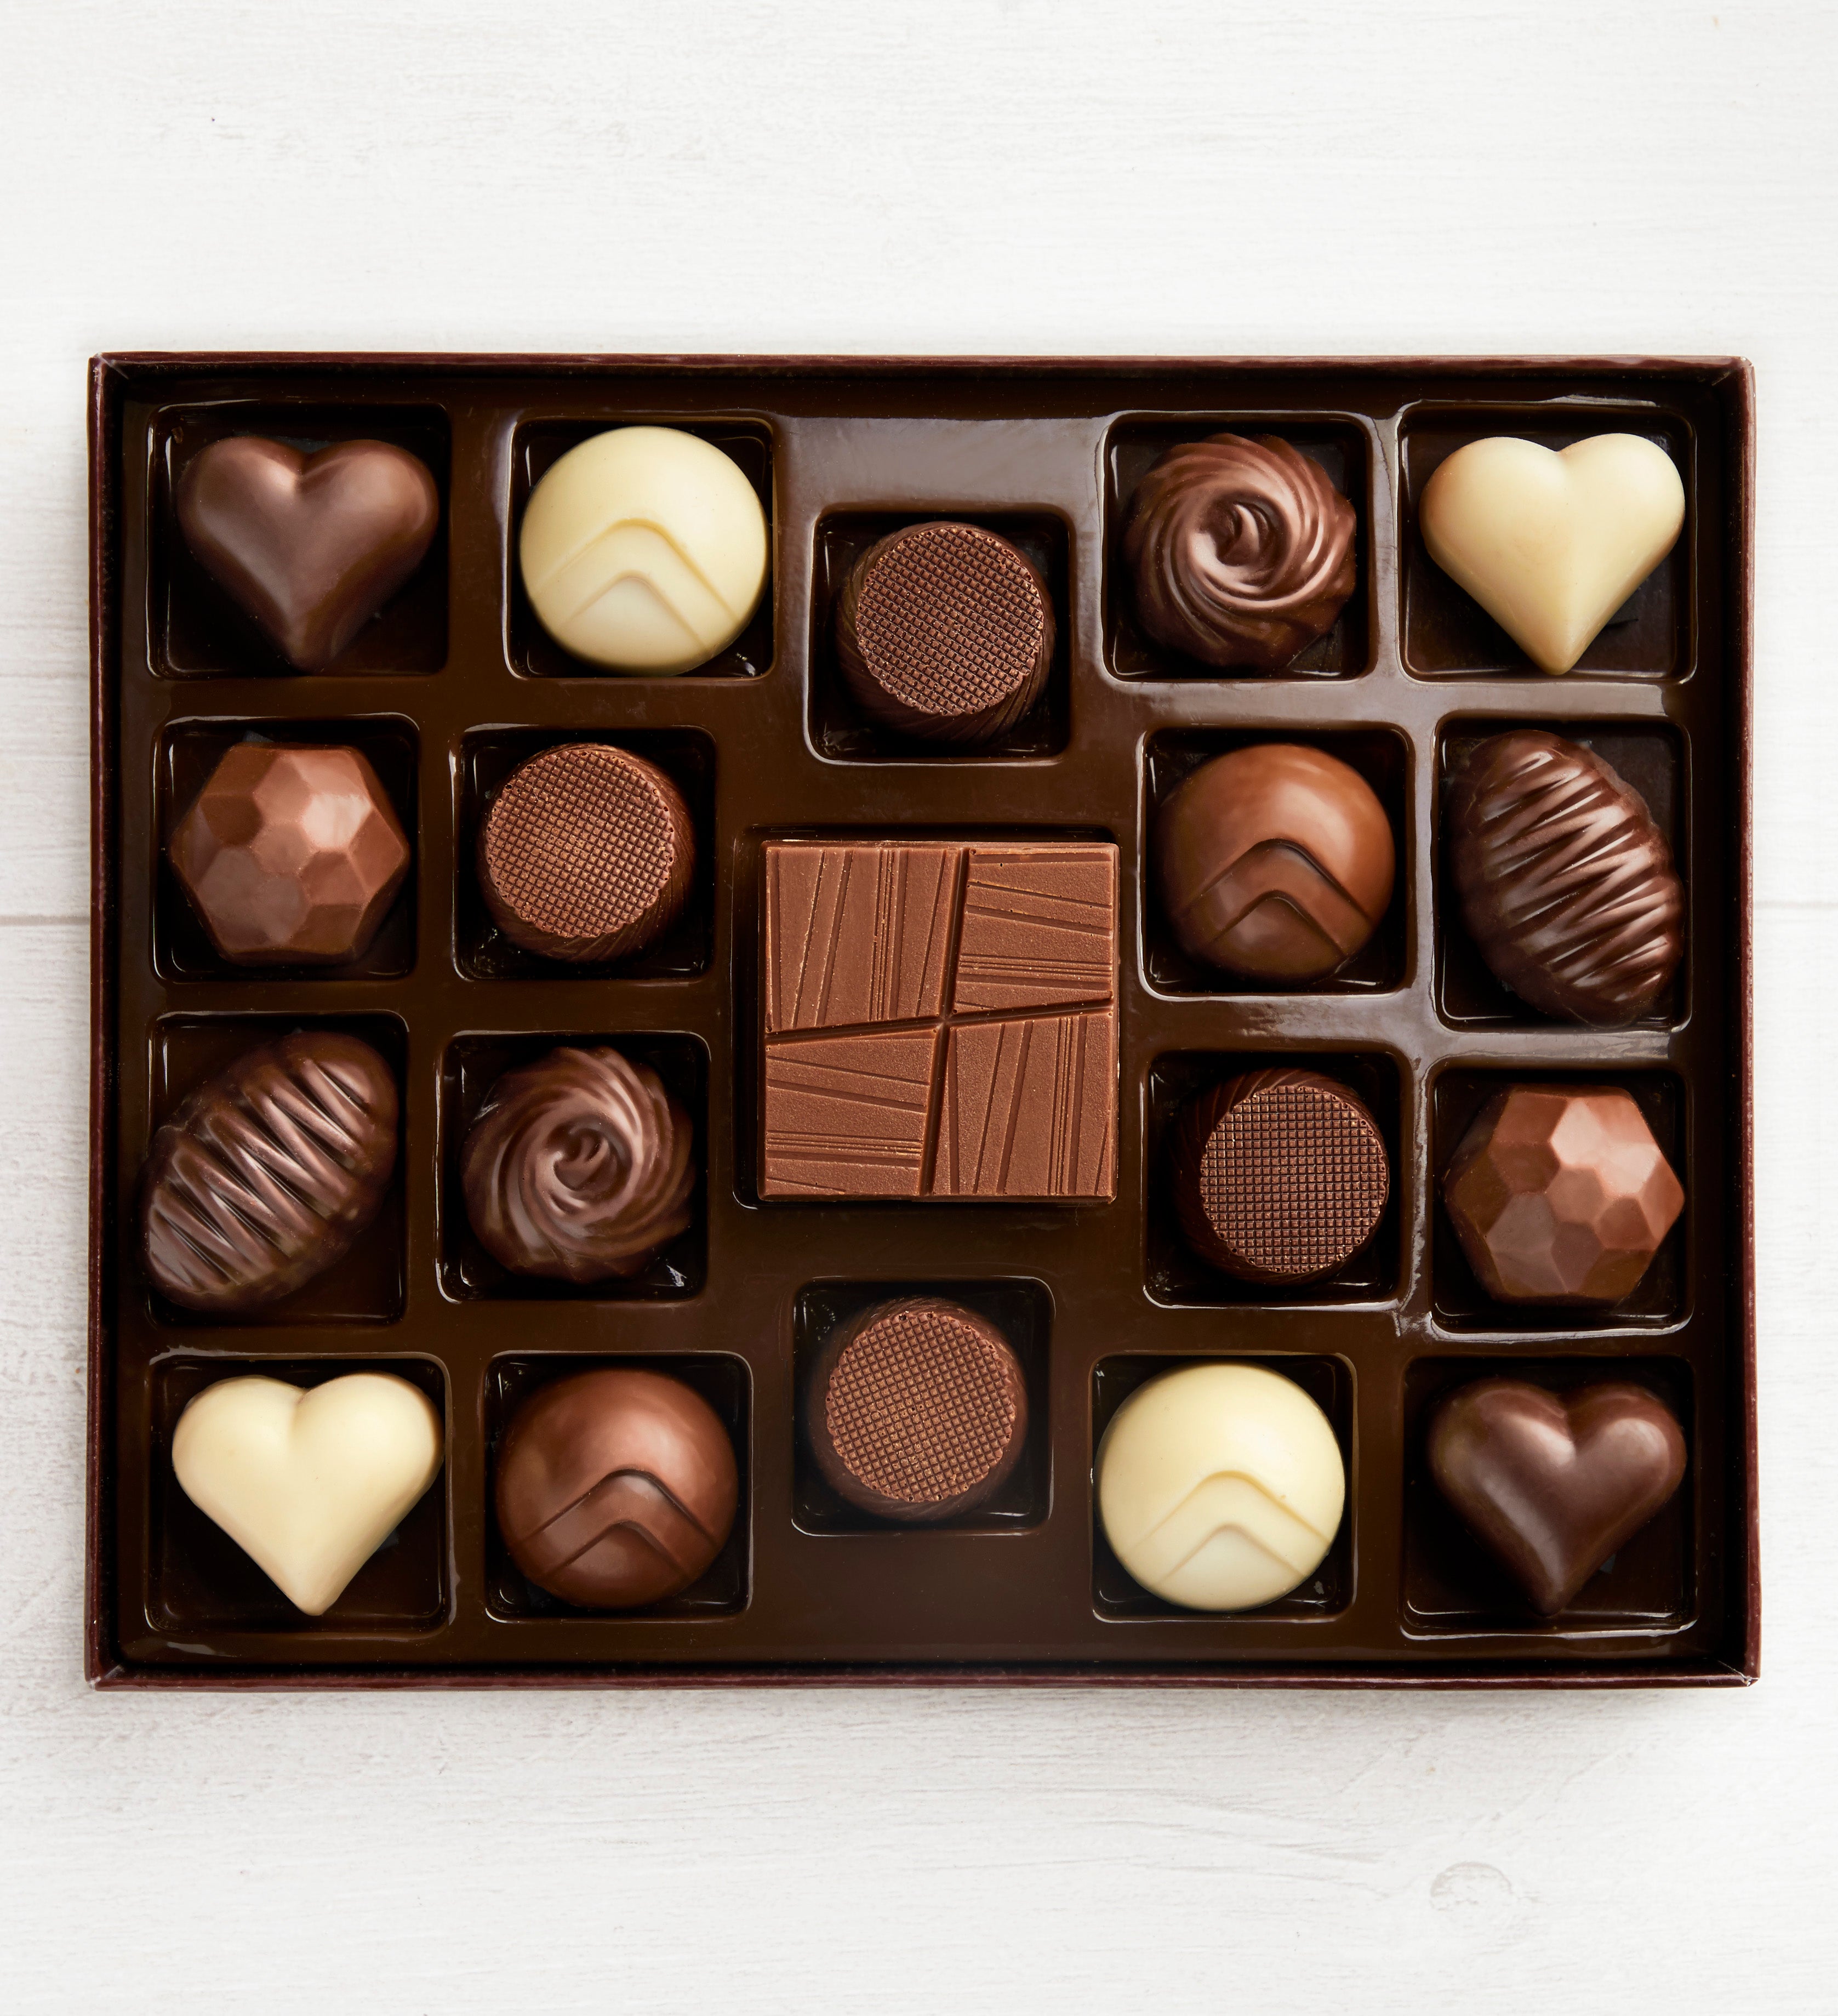 Simply Chocolate® Sparkle Away 19pc Chocolate Box